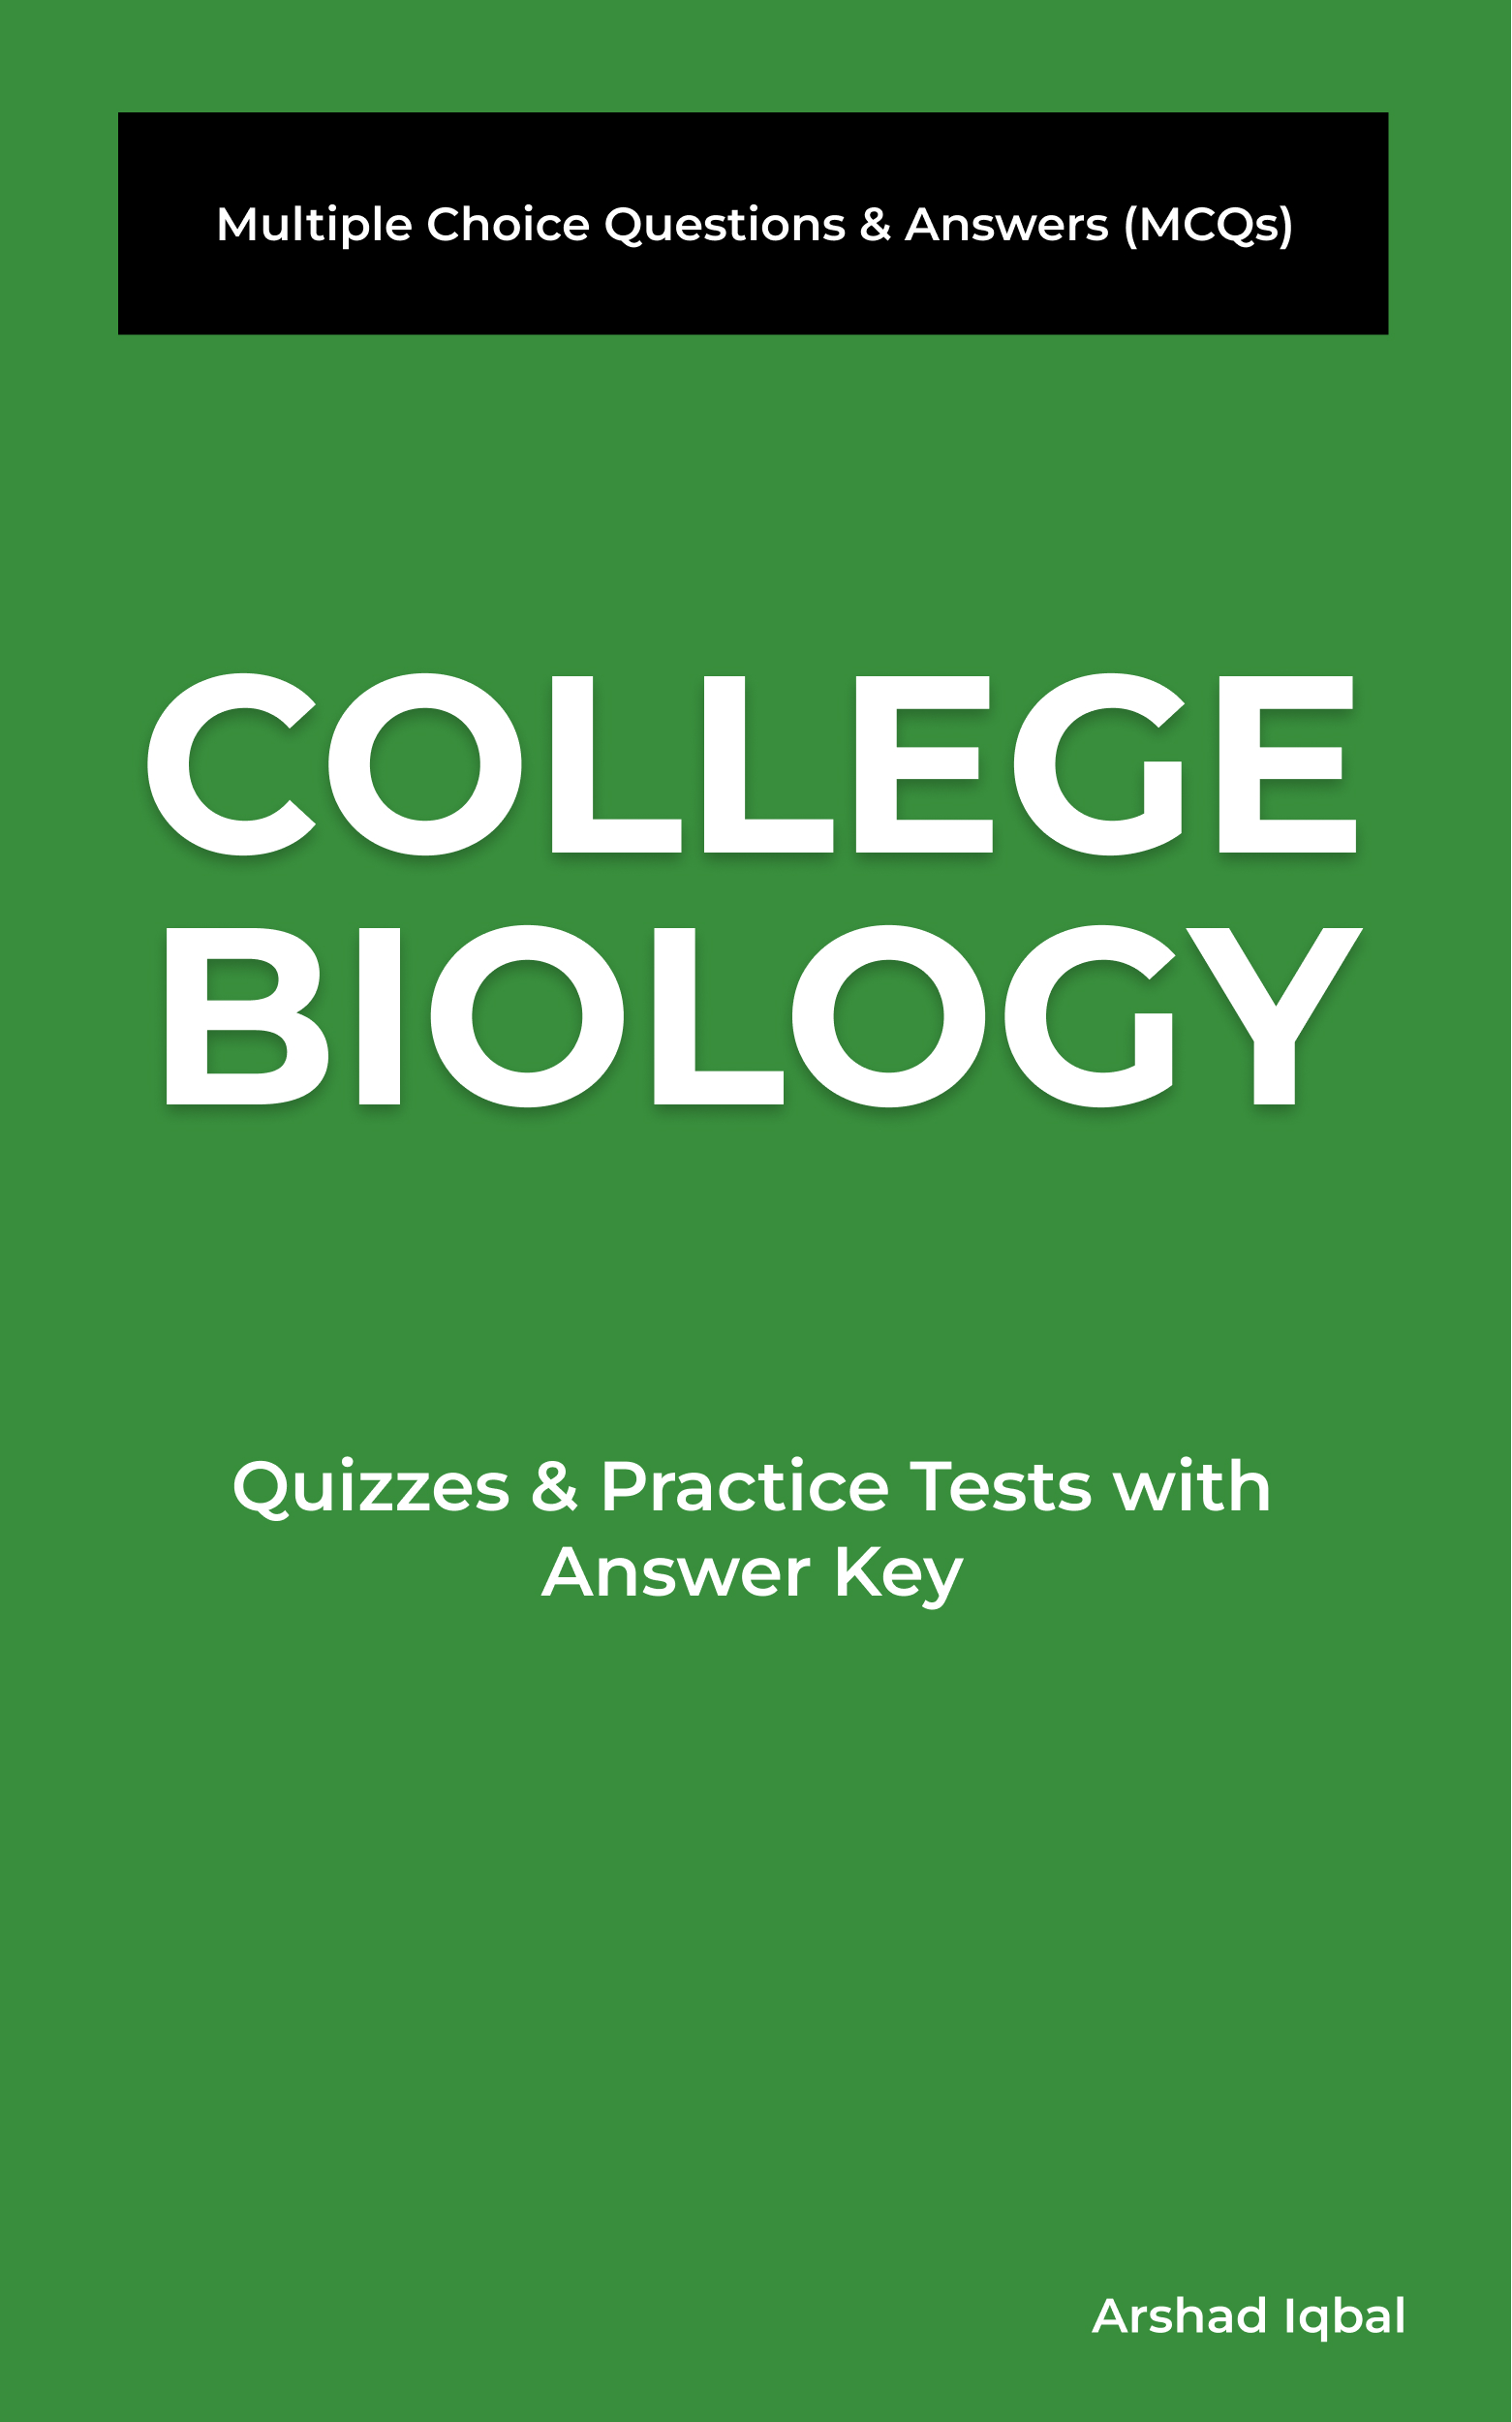 College Biology MCQ Book PDF